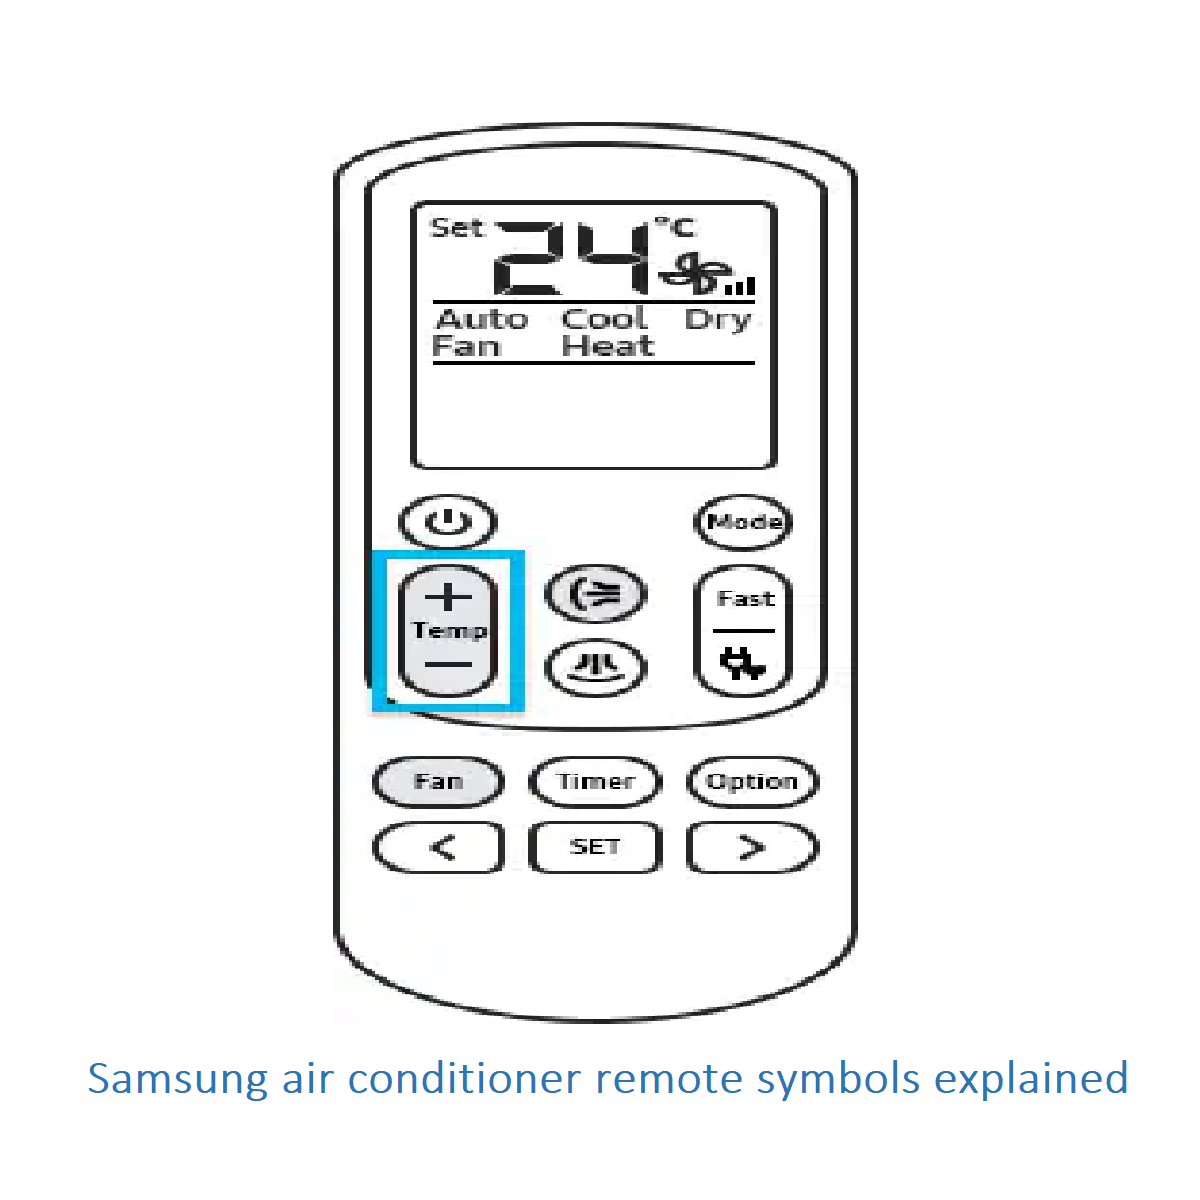 Samsung air conditioner remote symbols